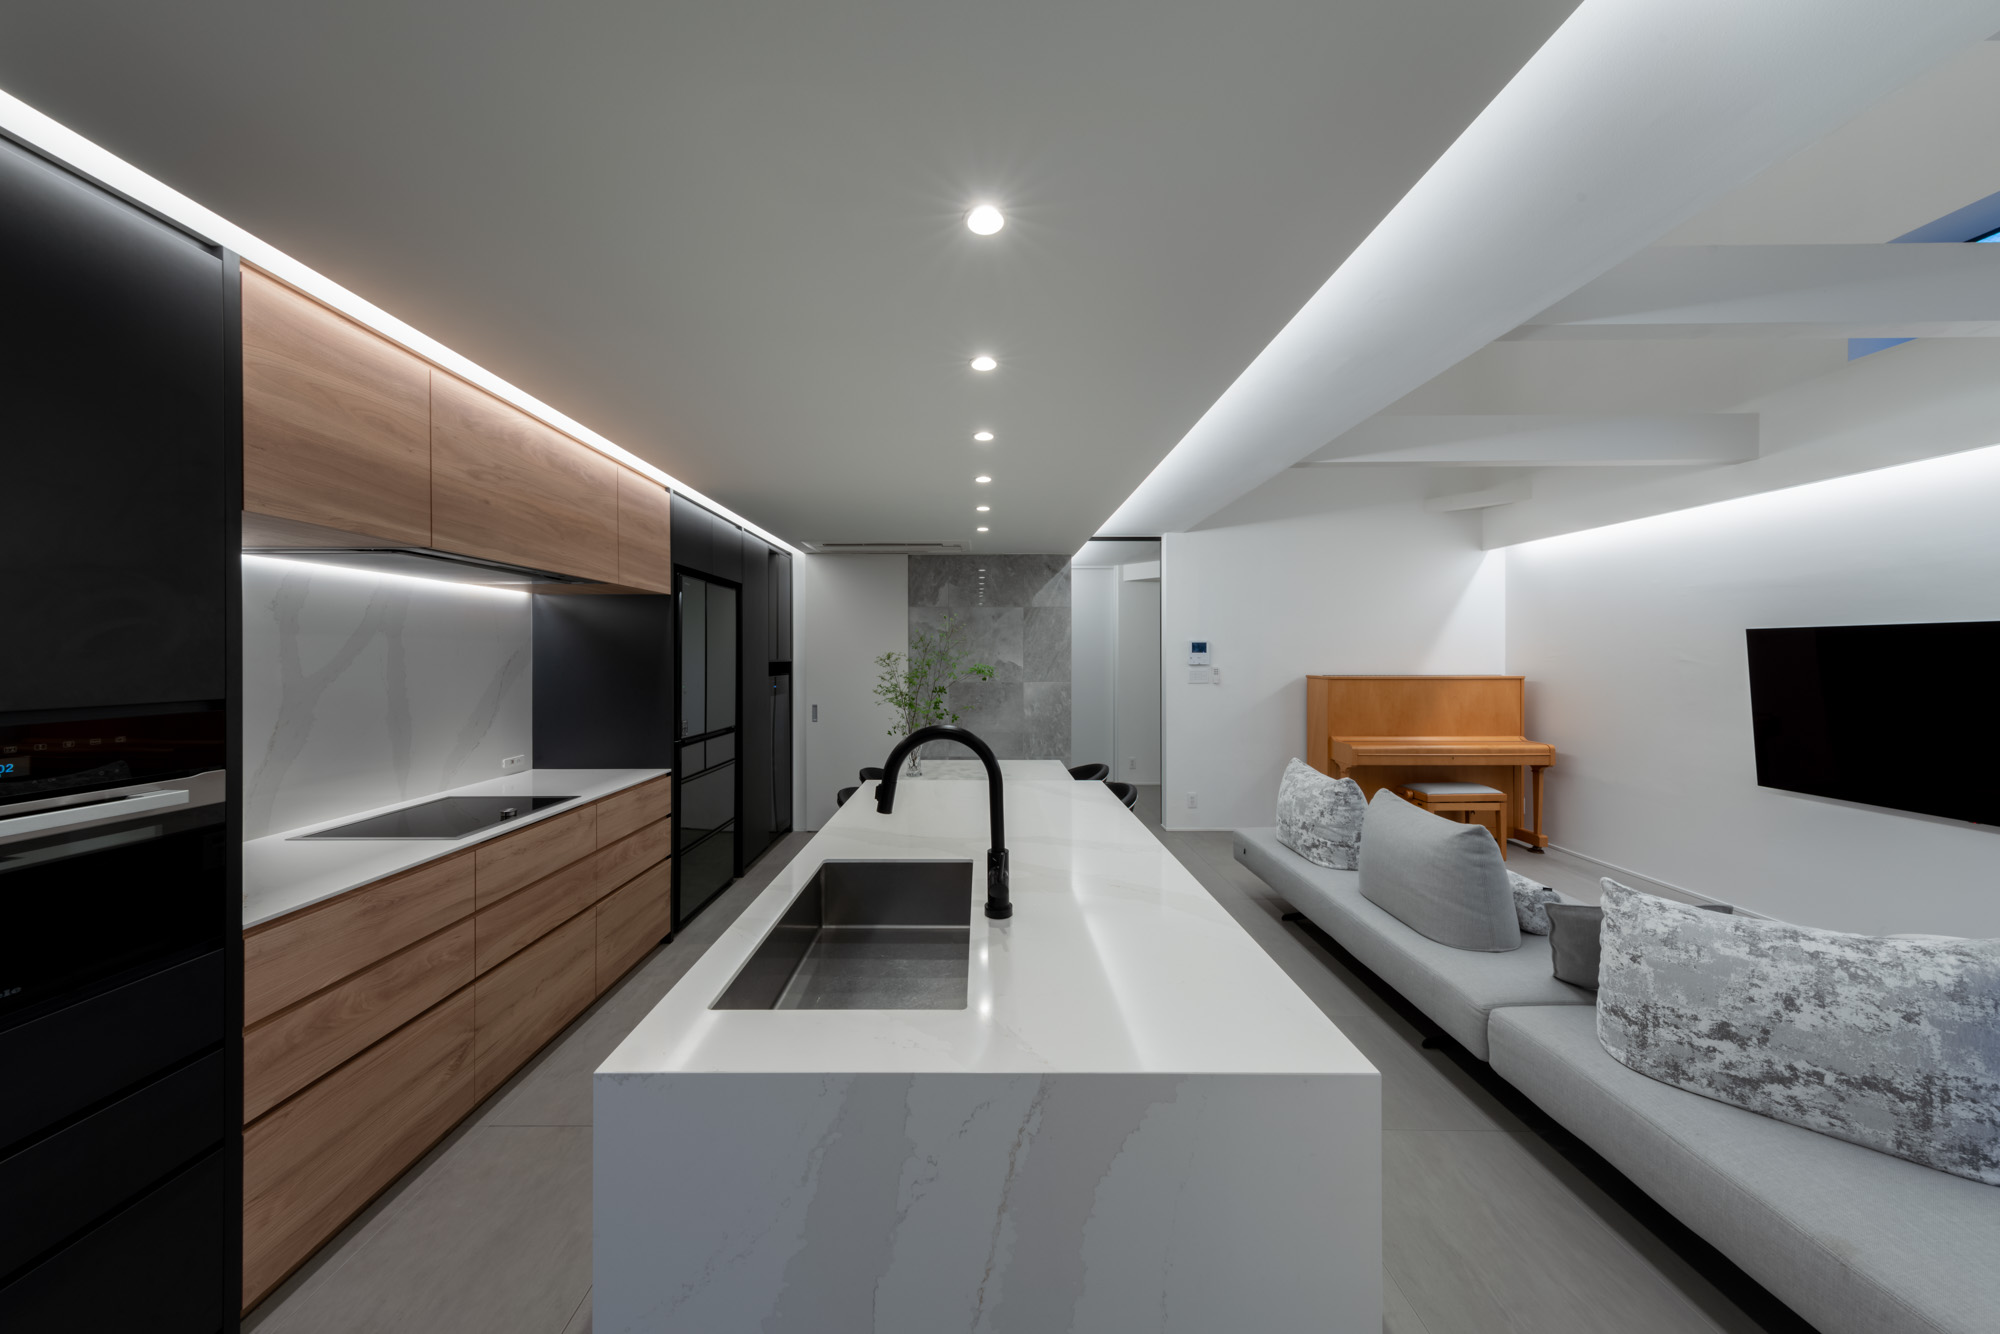 壁や天井の境目を利用し間接照明を設けたLDK・デザイン住宅